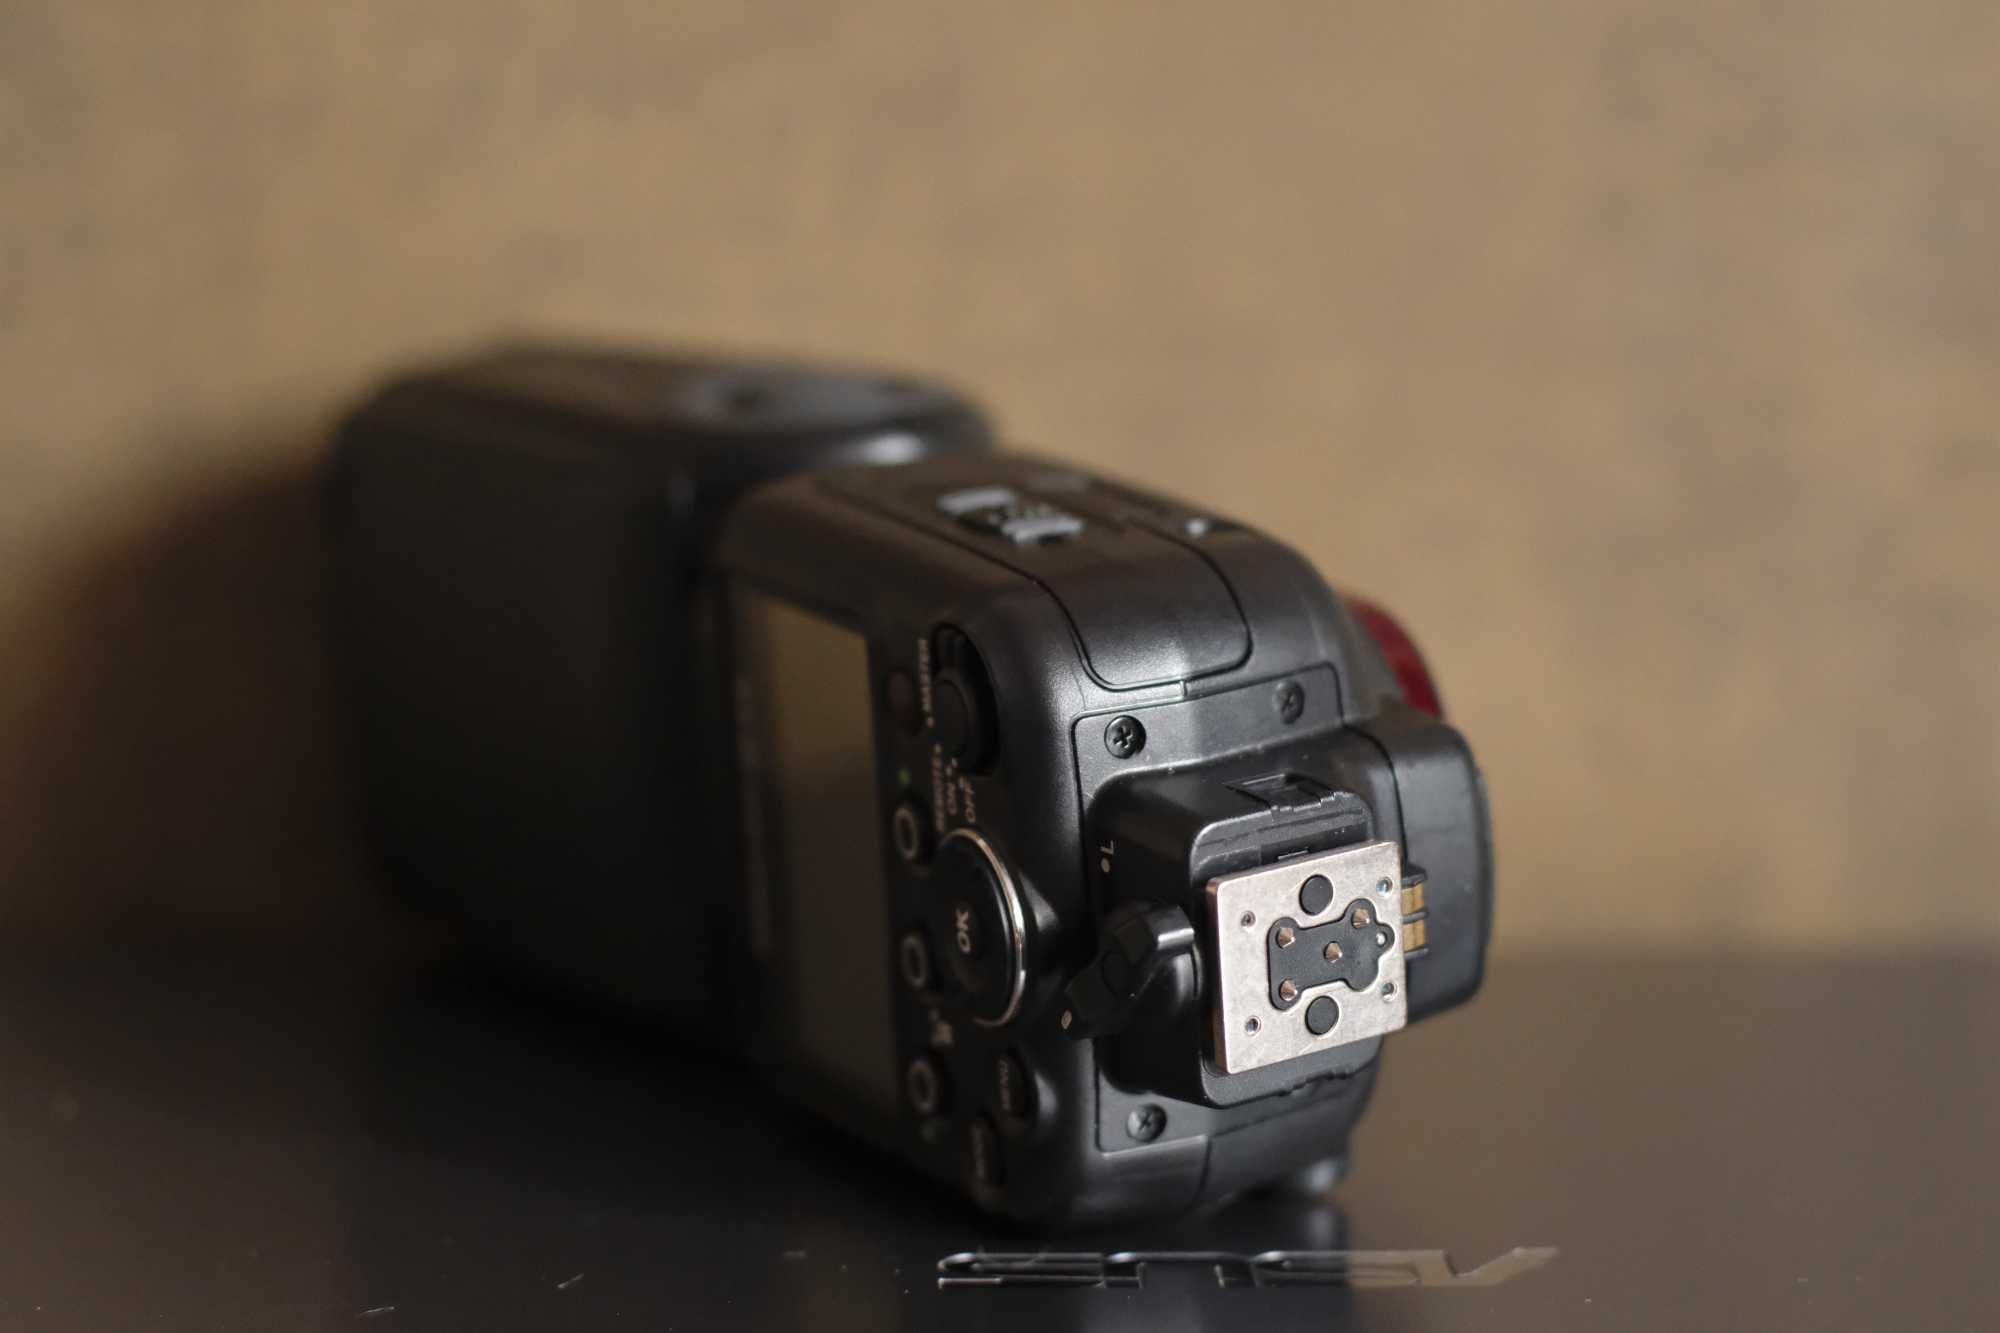 Профессиональная фото вспышка Speedlight SB-910 Nikon